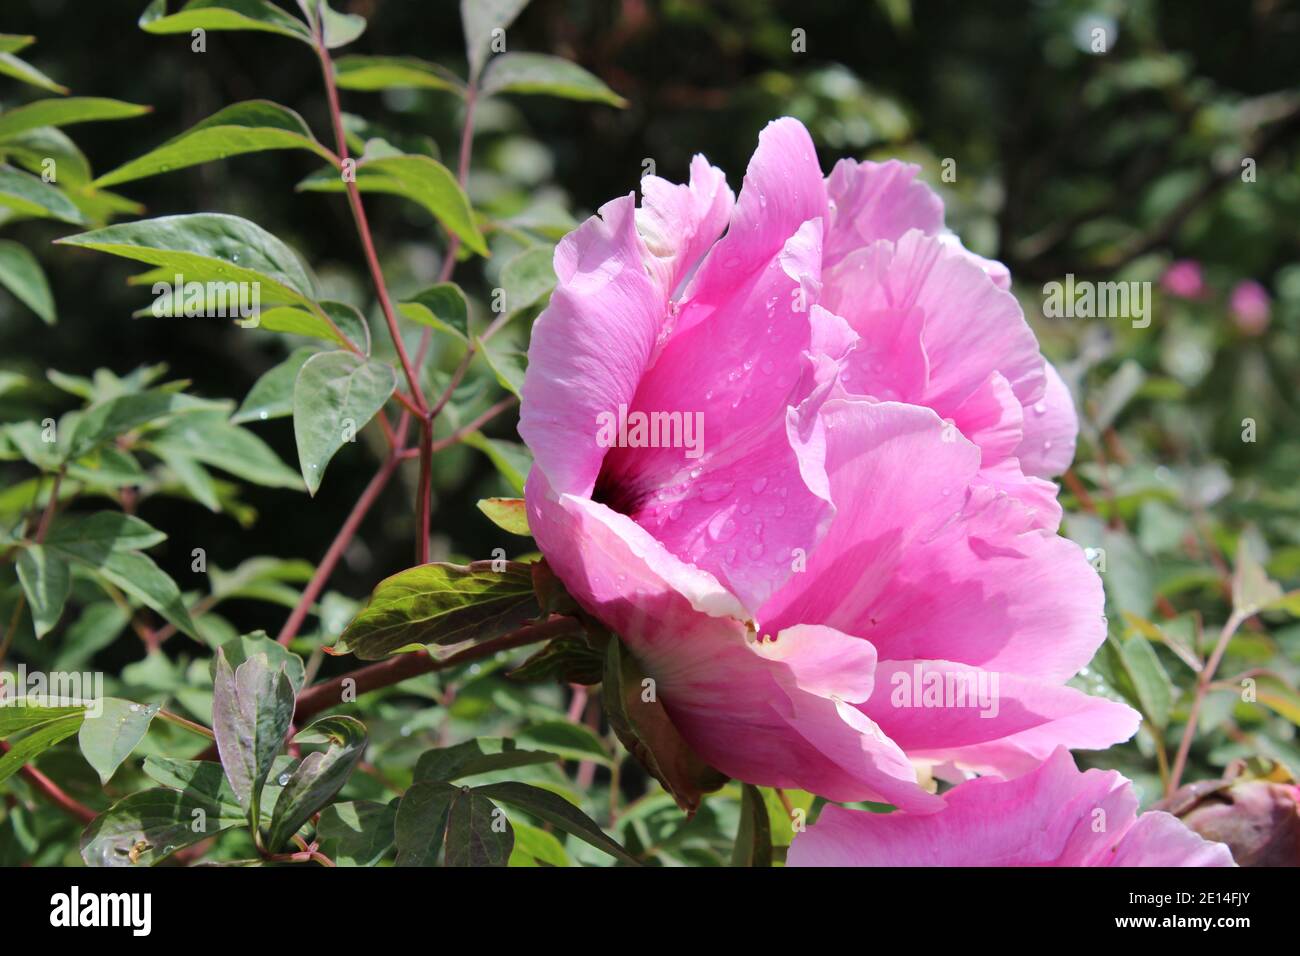 pink, intensiv rosa farbene Pfingstrose in einem Park in NRW, Deutschland Stock Photo